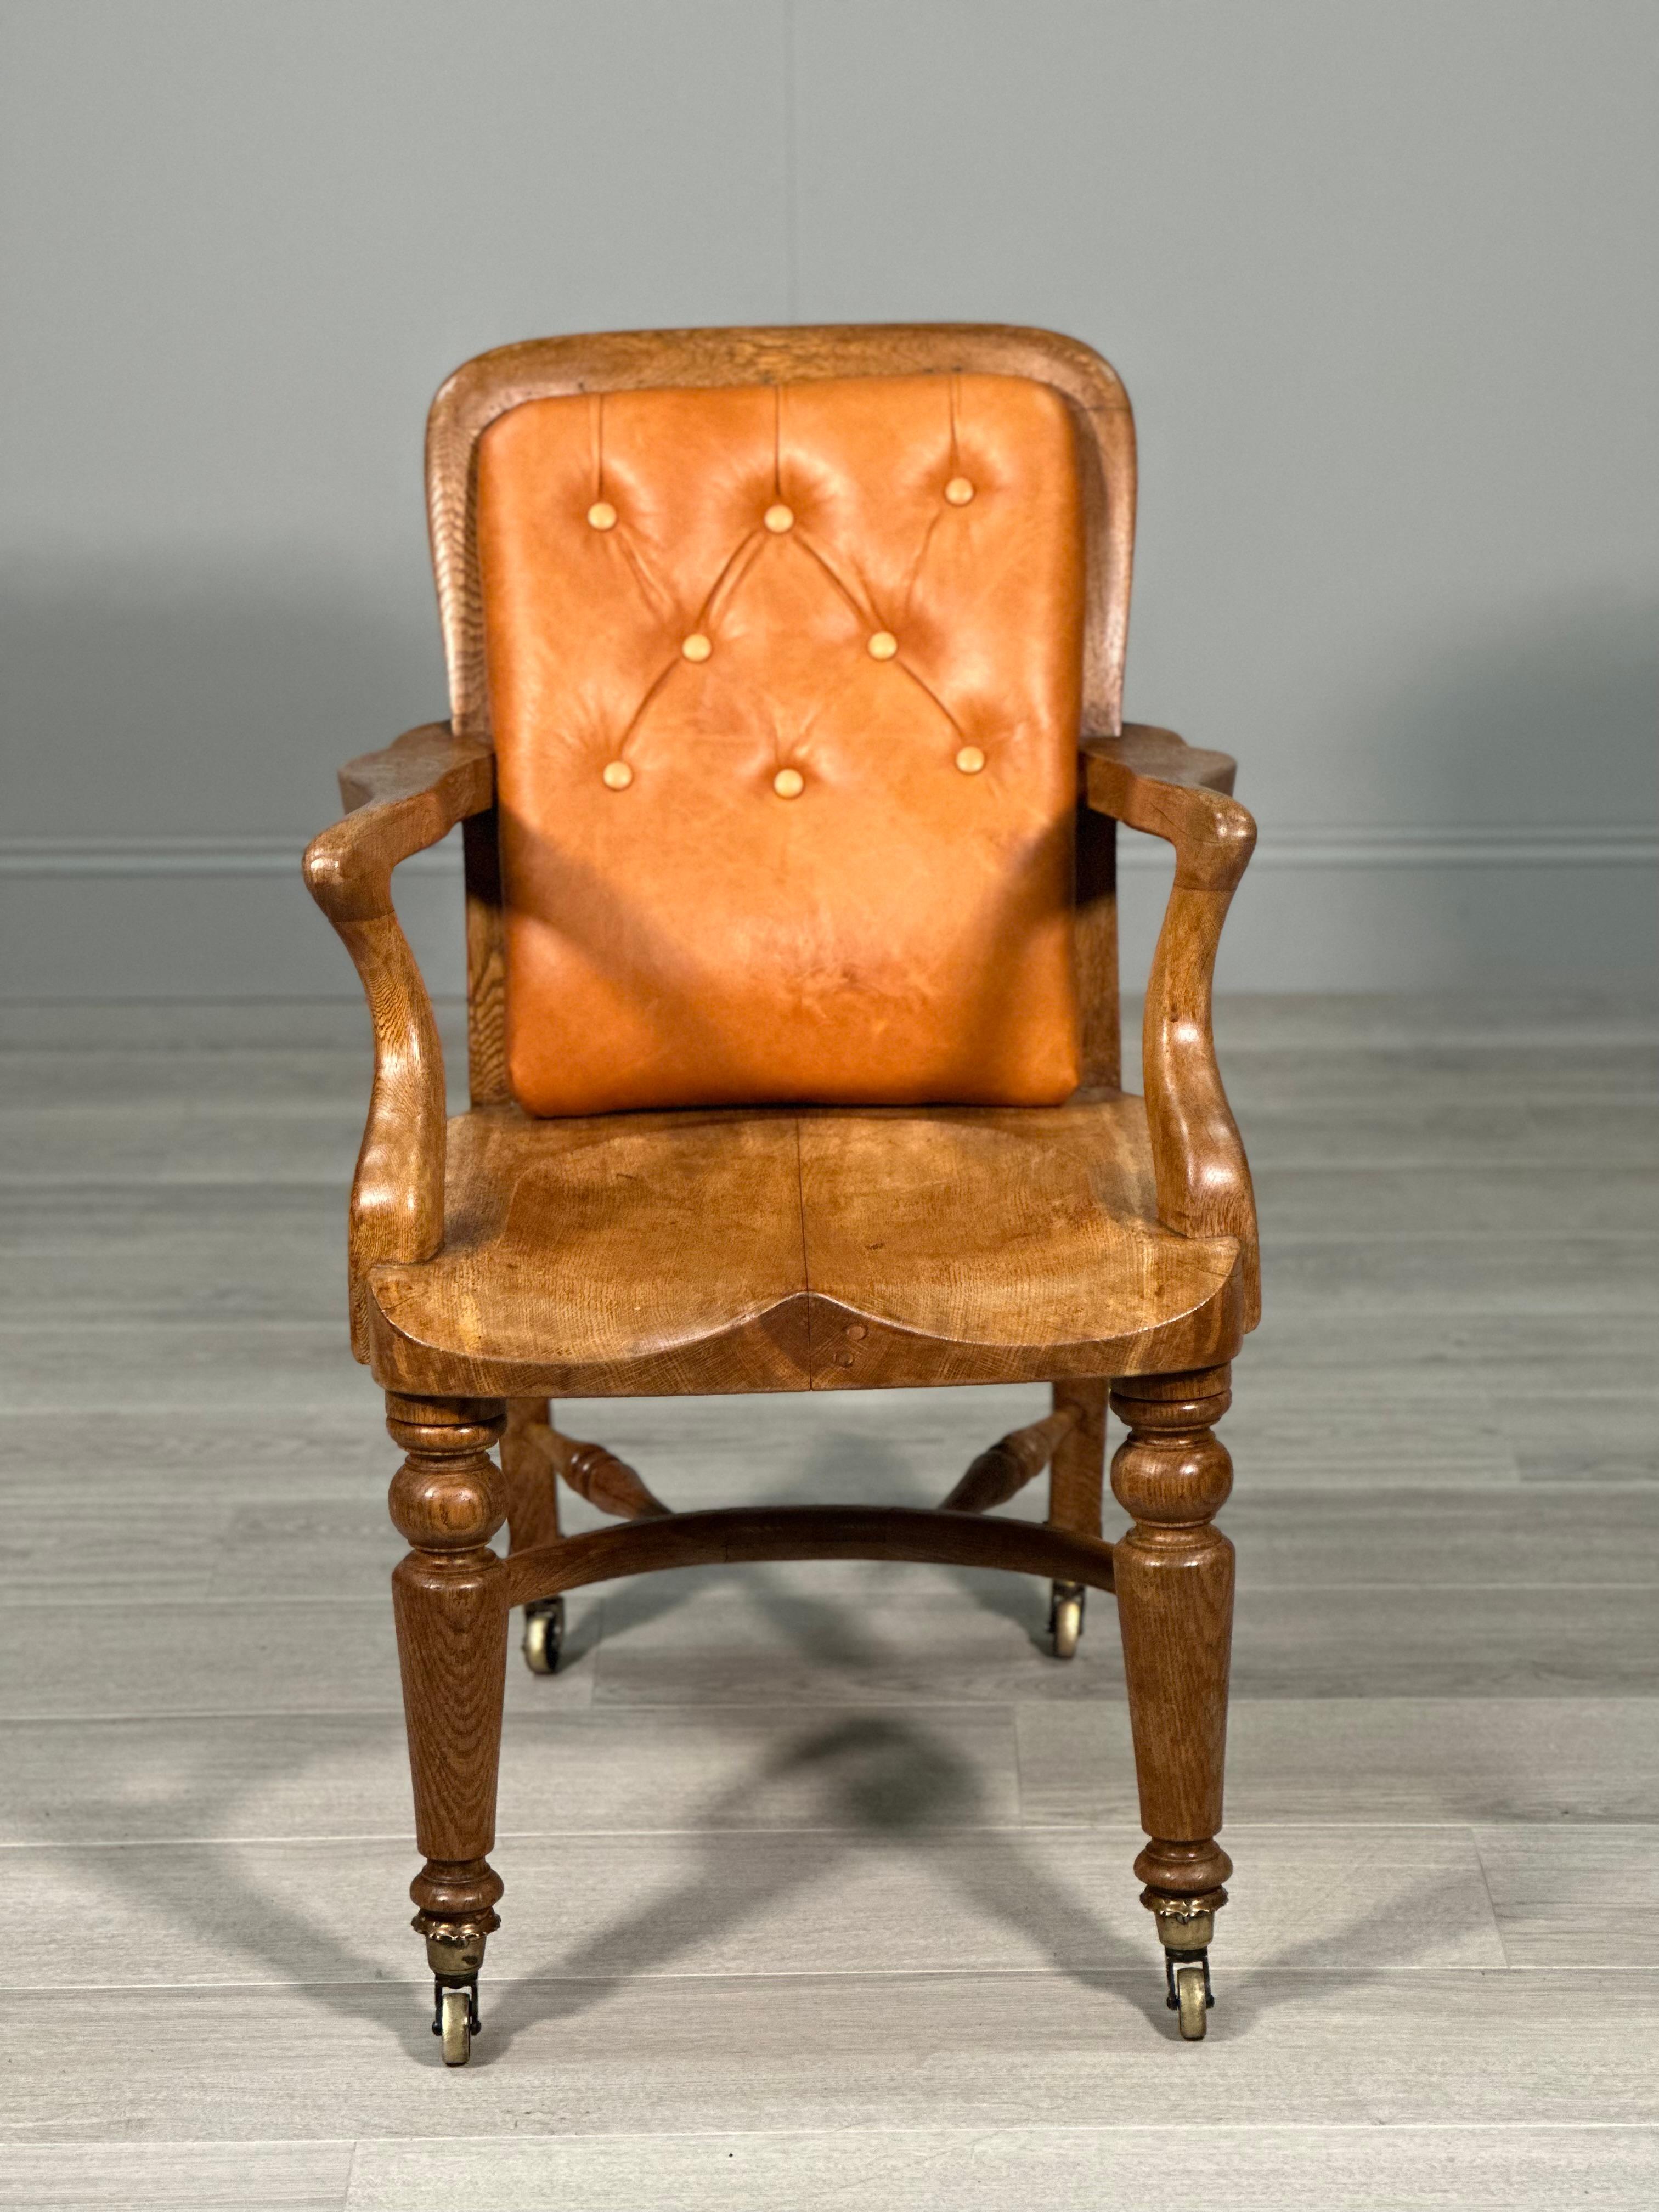 Une chaise de bureau ancienne de qualité datant de la fin du 19e siècle. La qualité de cette chaise se retrouve dans chaque détail, de la coupe de chêne utilisée aux roulettes en laiton, en passant par l'assise en forme de selle et le dossier en